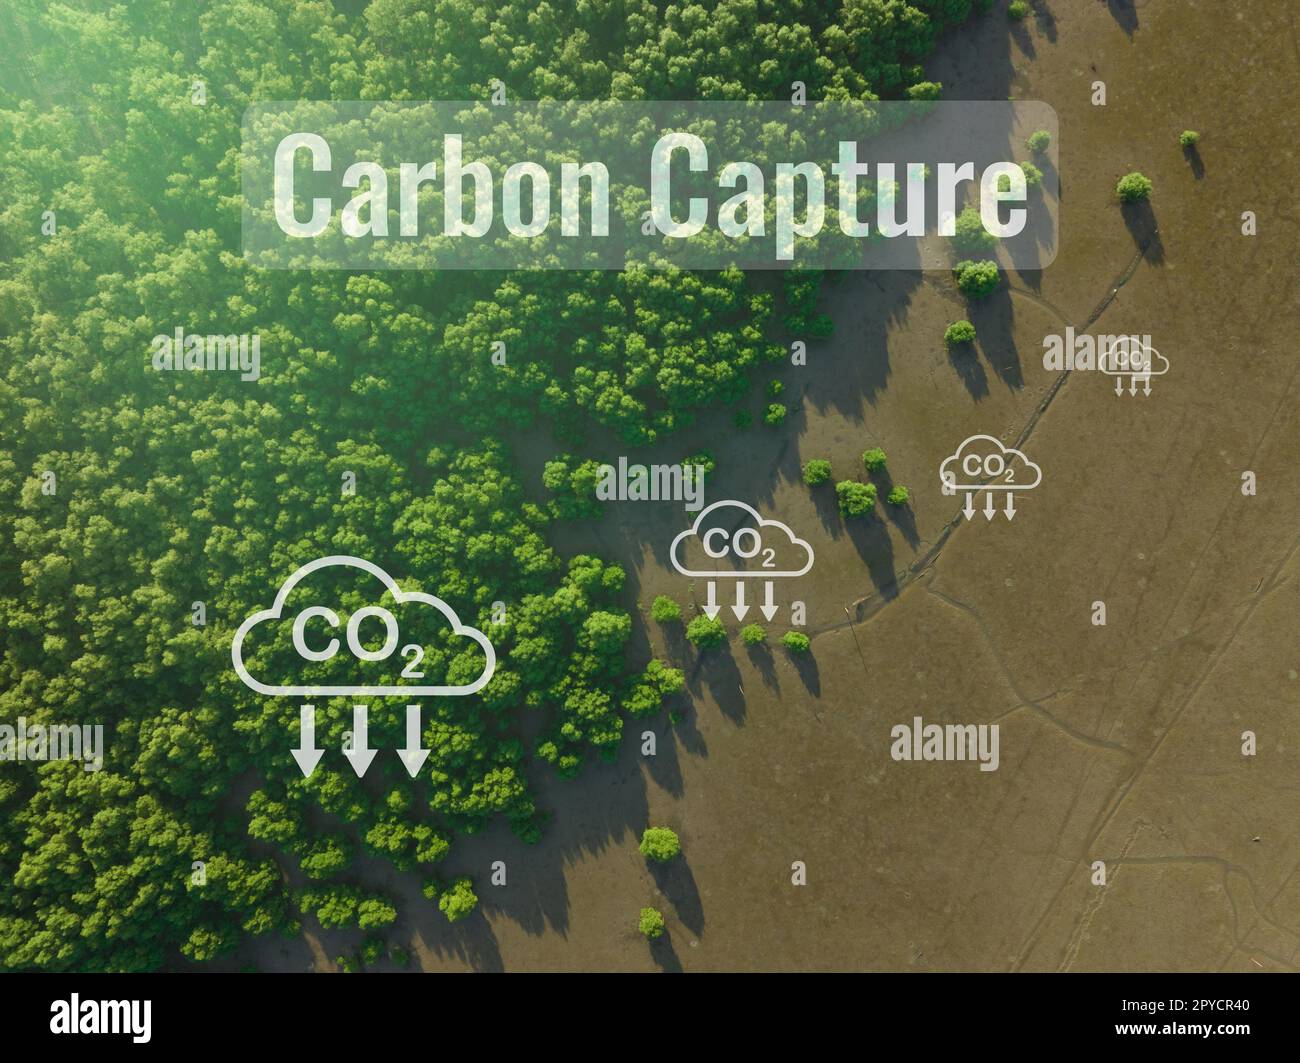 Konzept der CO2-Abscheidung. Natürliche Kohlenstoffsenken. Mangrovenbäume fangen CO2 aus der Atmosphäre ein. Luftaufnahme des grünen Mangrovenwaldes. Blaue Kohlenstoffökosysteme. Mangroven absorbieren Kohlendioxidemissionen. Stockfoto